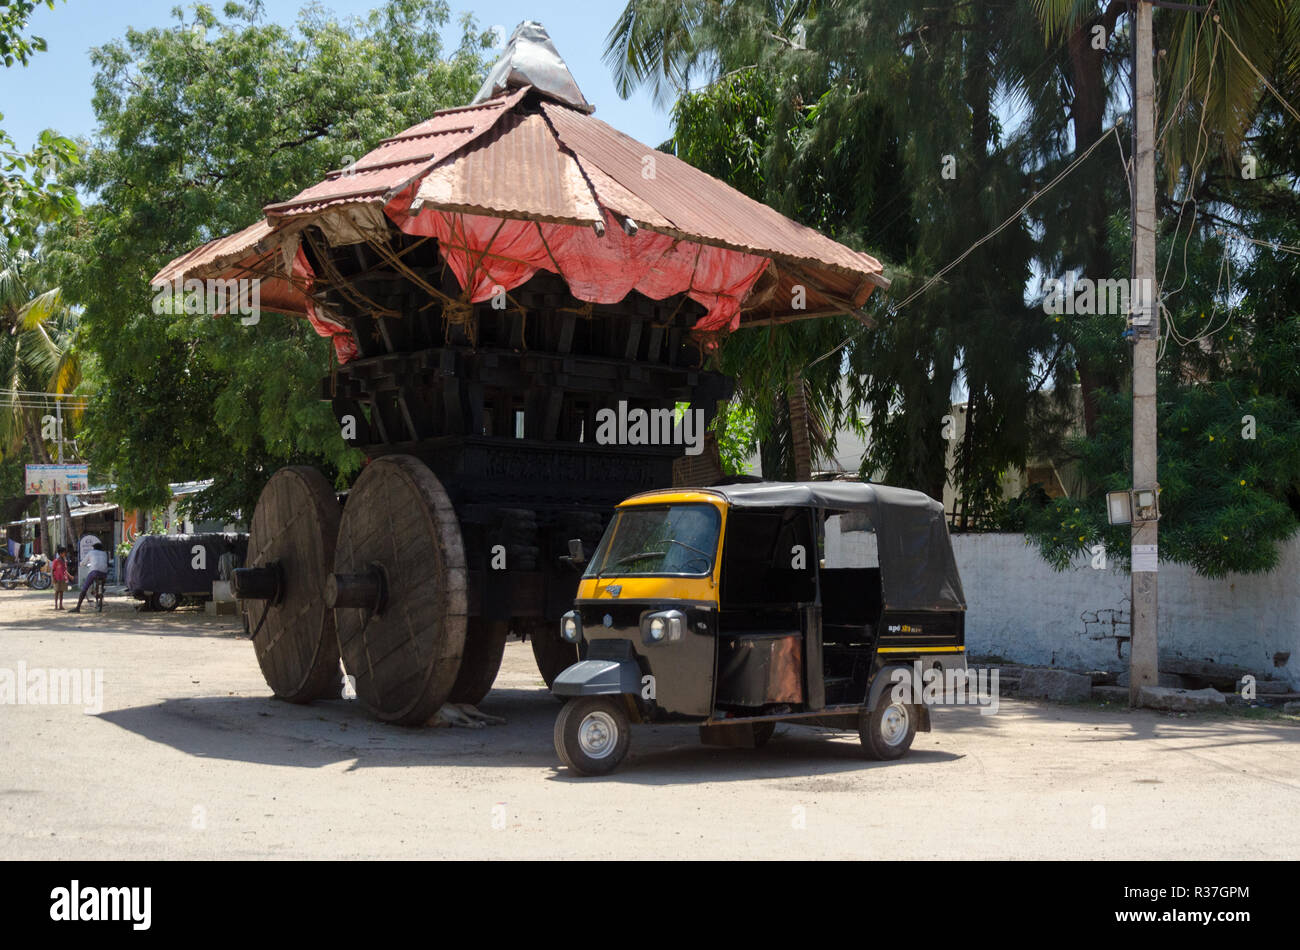 Chariot a madera, Anegundi Ranganatha, Karnataka, India Foto de stock